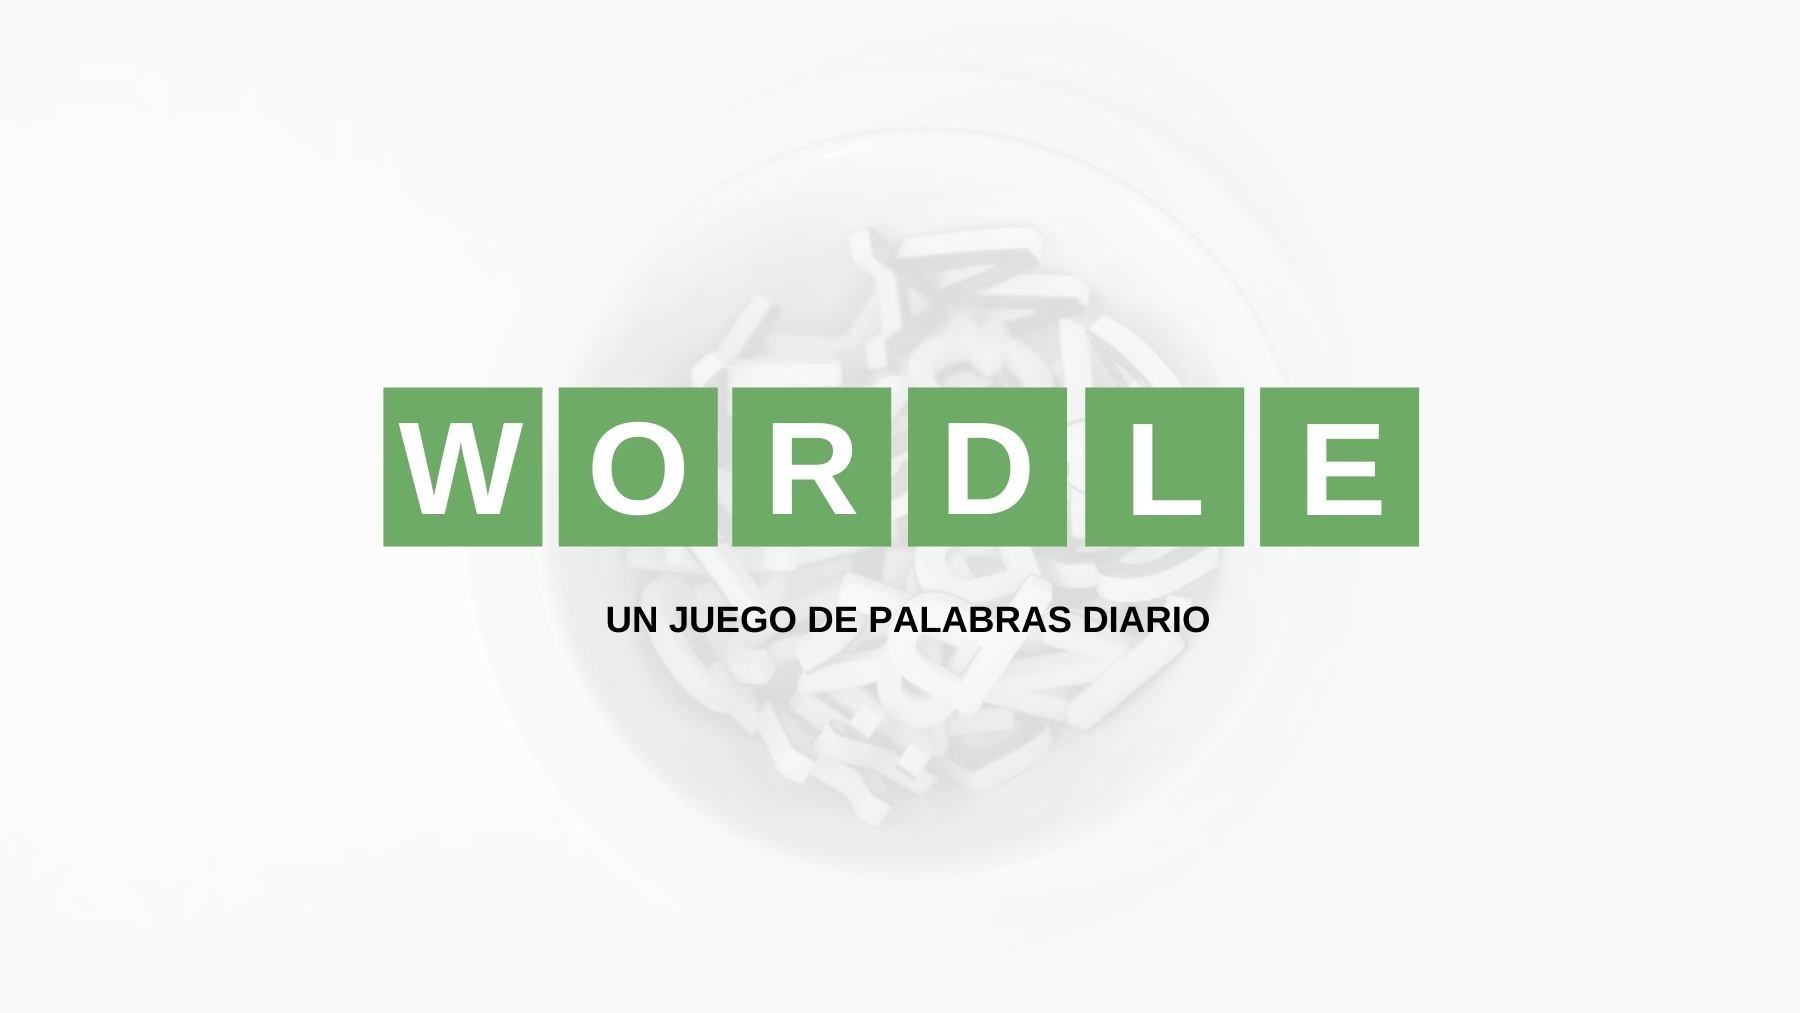 Solución palabra Wordle español, científico y con tildes hoy, miércoles 1 de junio de 2022